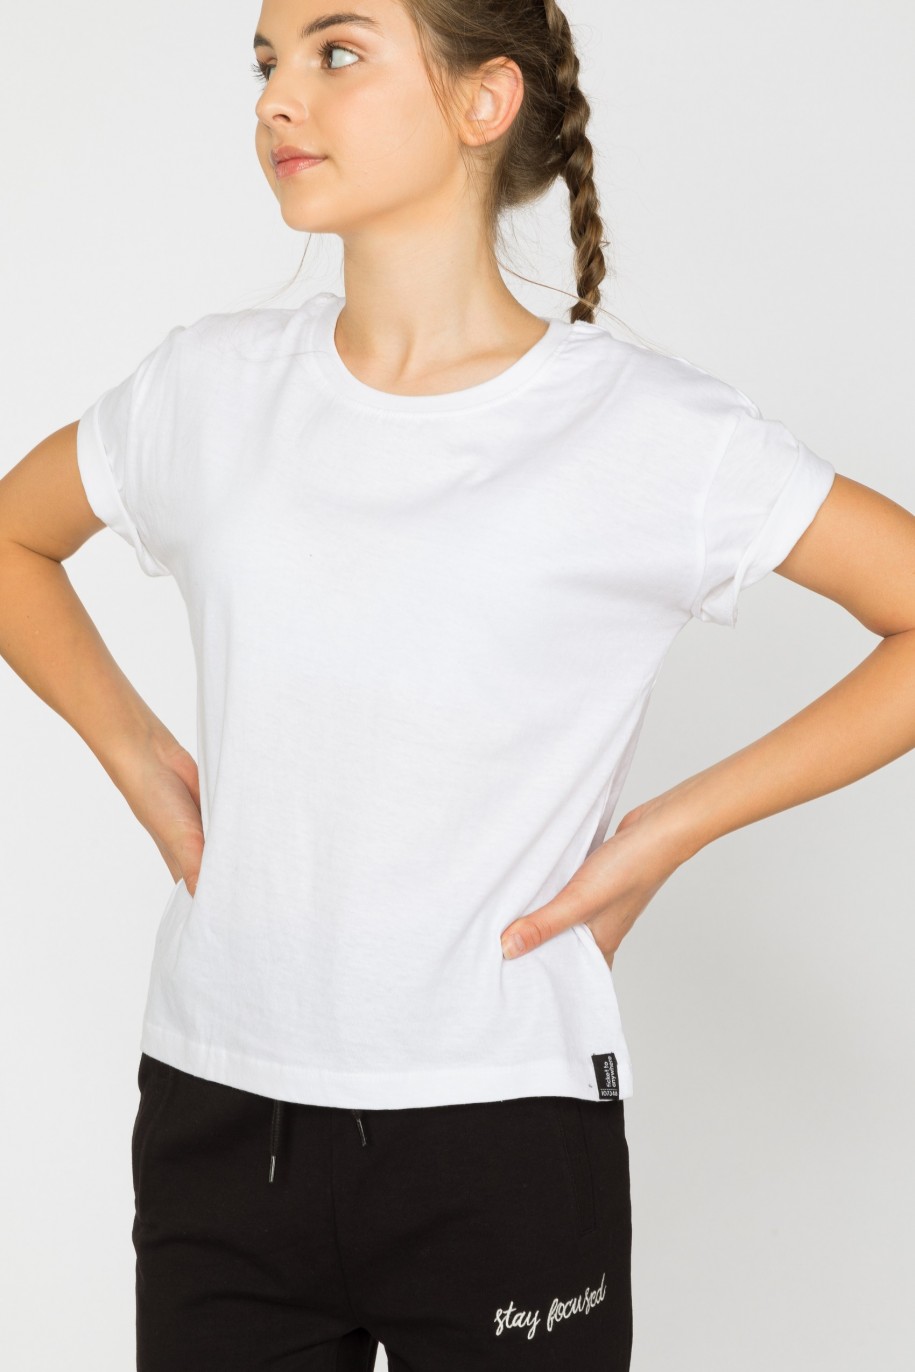 Biały t-shirt dla dziewczyny bez nadruku - 29361